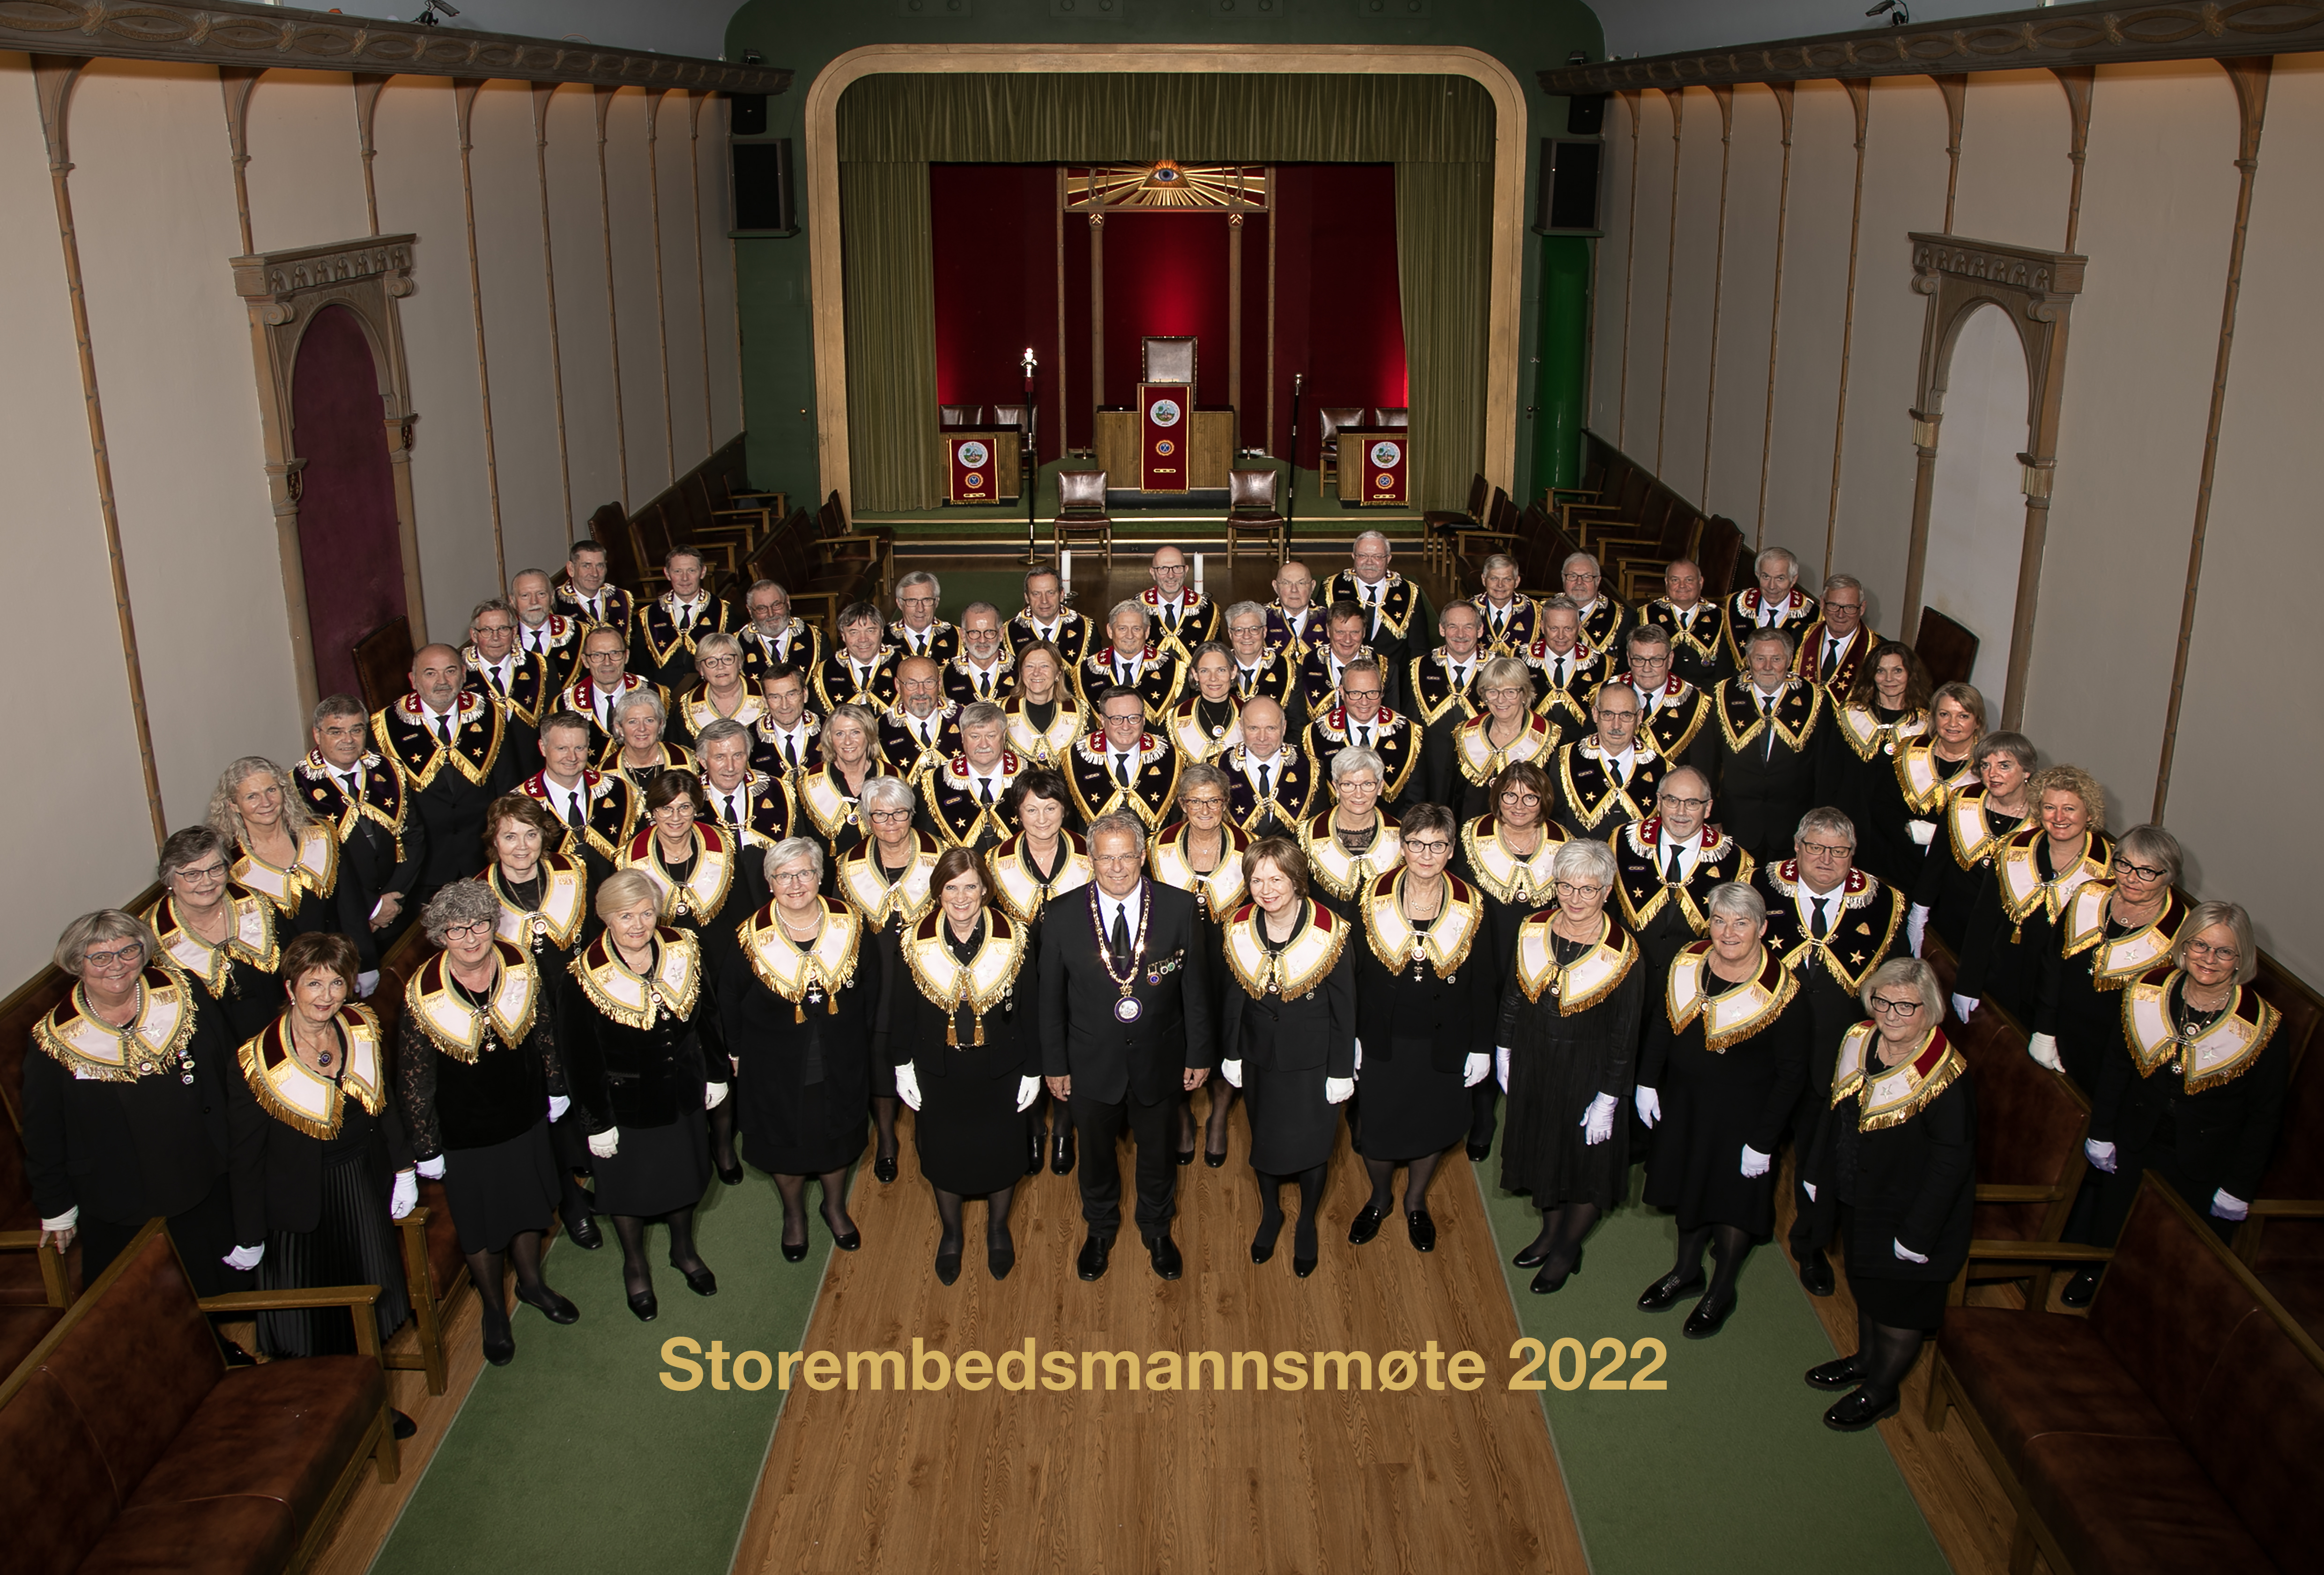 Bilde av alle storembedsmenn tatt i a salen i stortingsgaten 28, Stor Sire Geir Småvik i midten foran med alle søstre- og brødrestorembedmenn rundt seg.